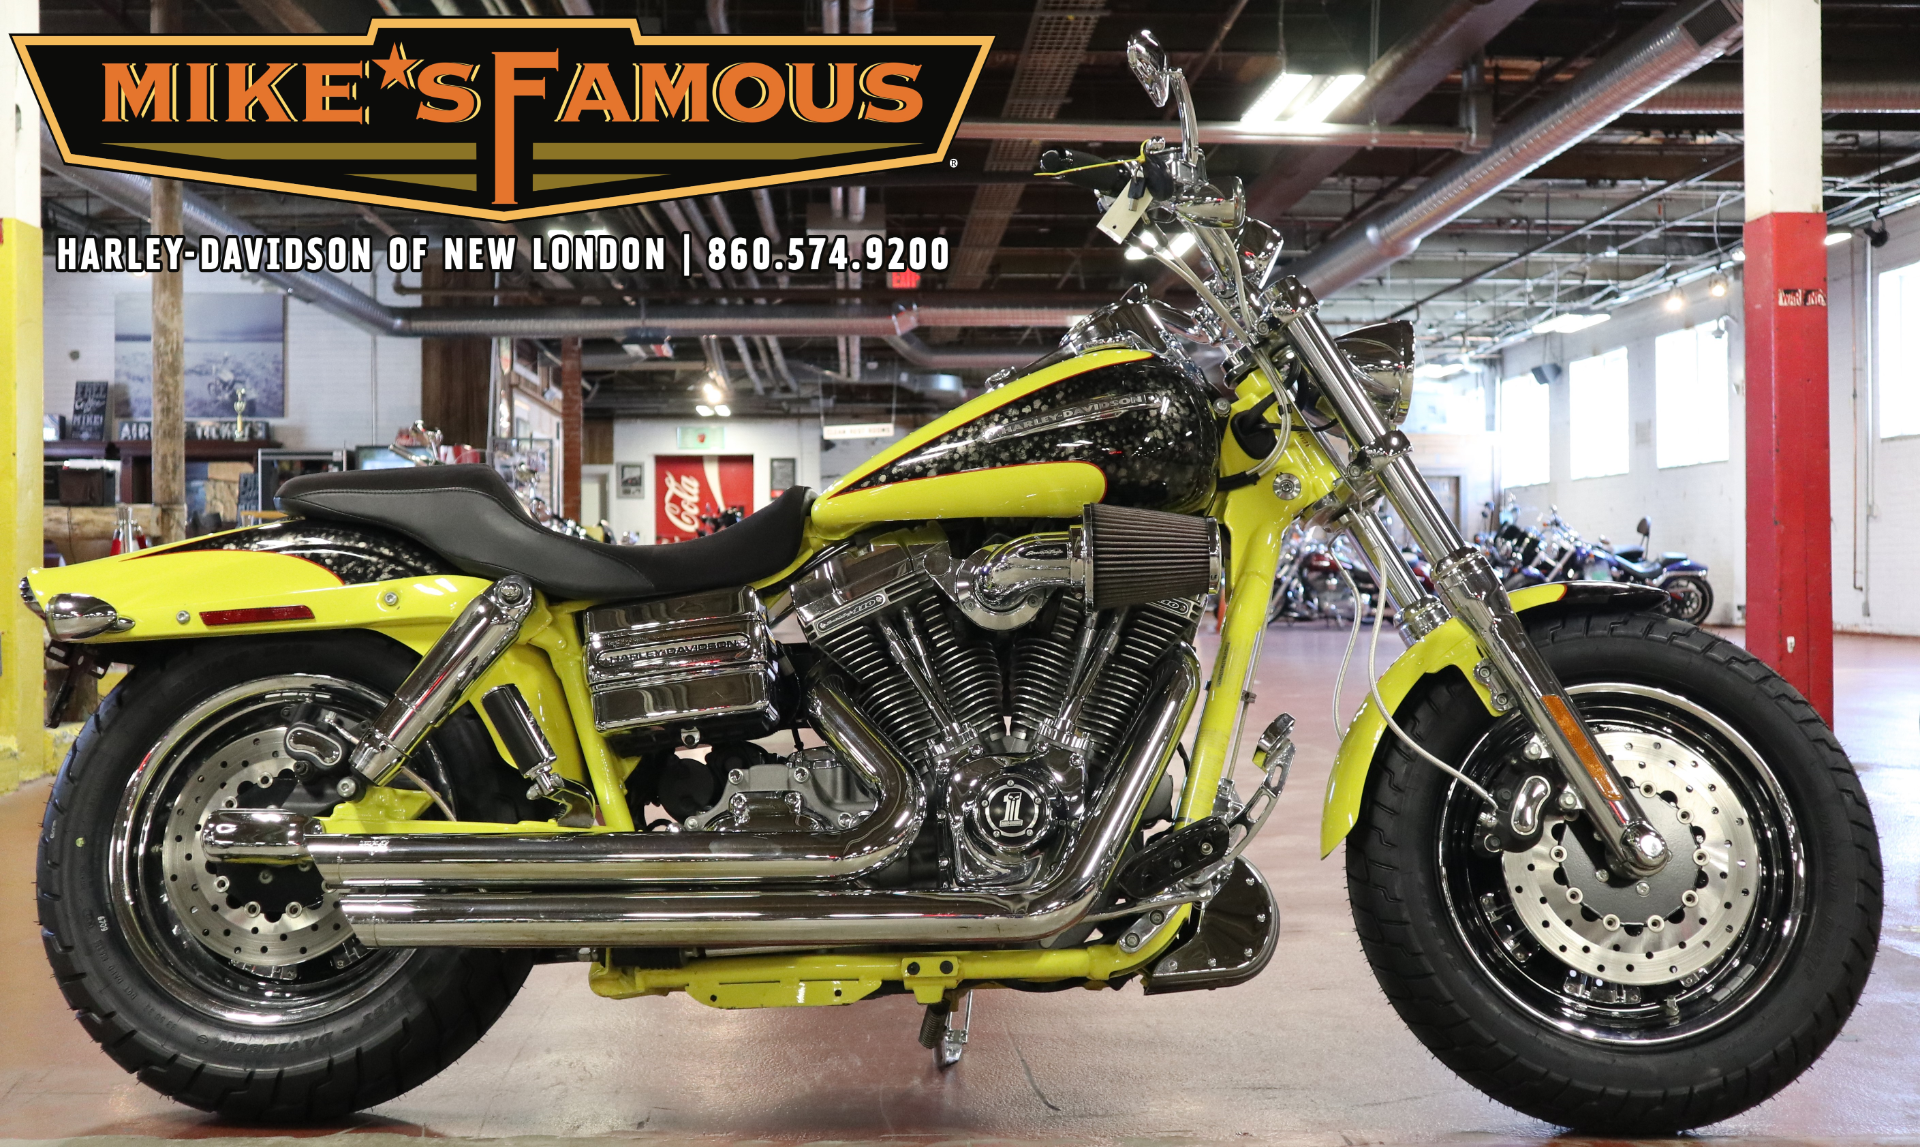 2009 Harley-Davidson CVO™ Dyna® Fat Bob® in New London, Connecticut - Photo 1